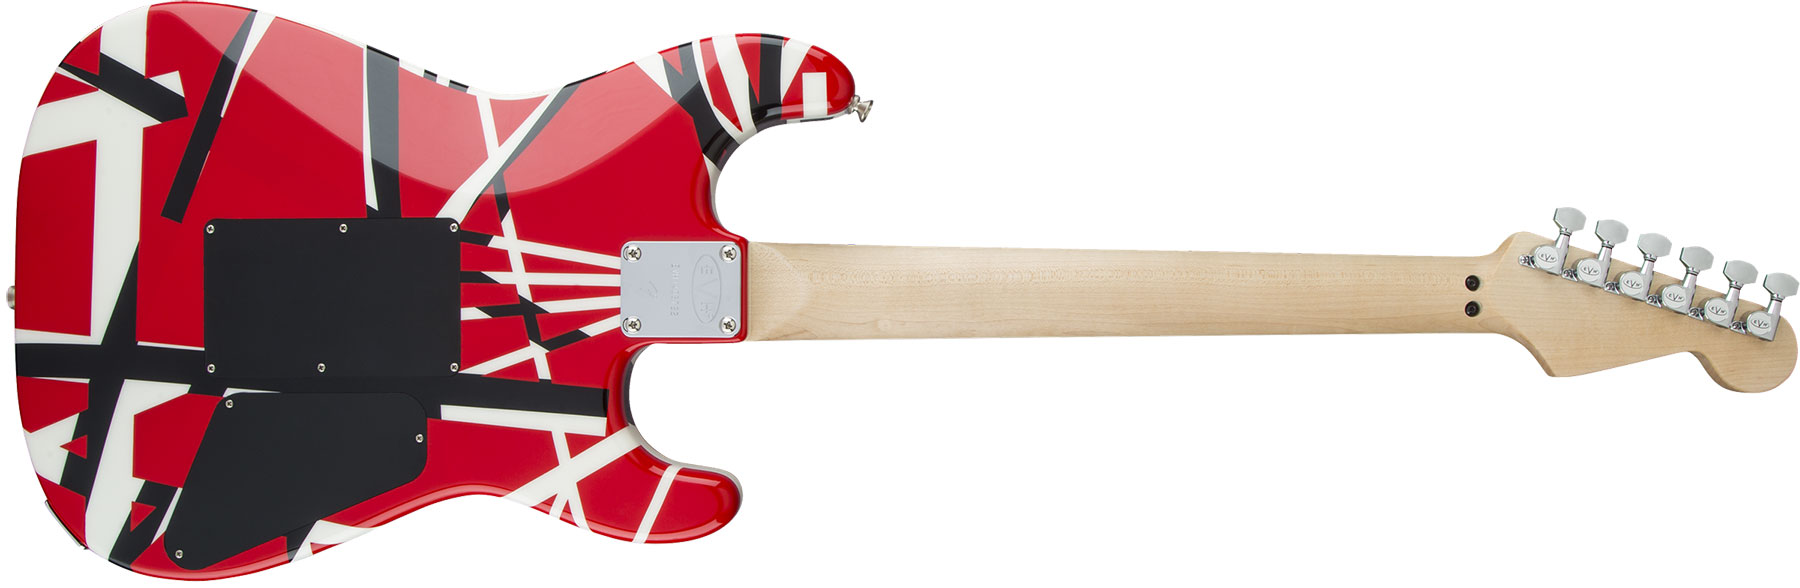 Evh Striped Series Lh Gaucher Signature H Fr Mn - Red Black White Stripes - Linkshandige elektrische gitaar - Variation 1